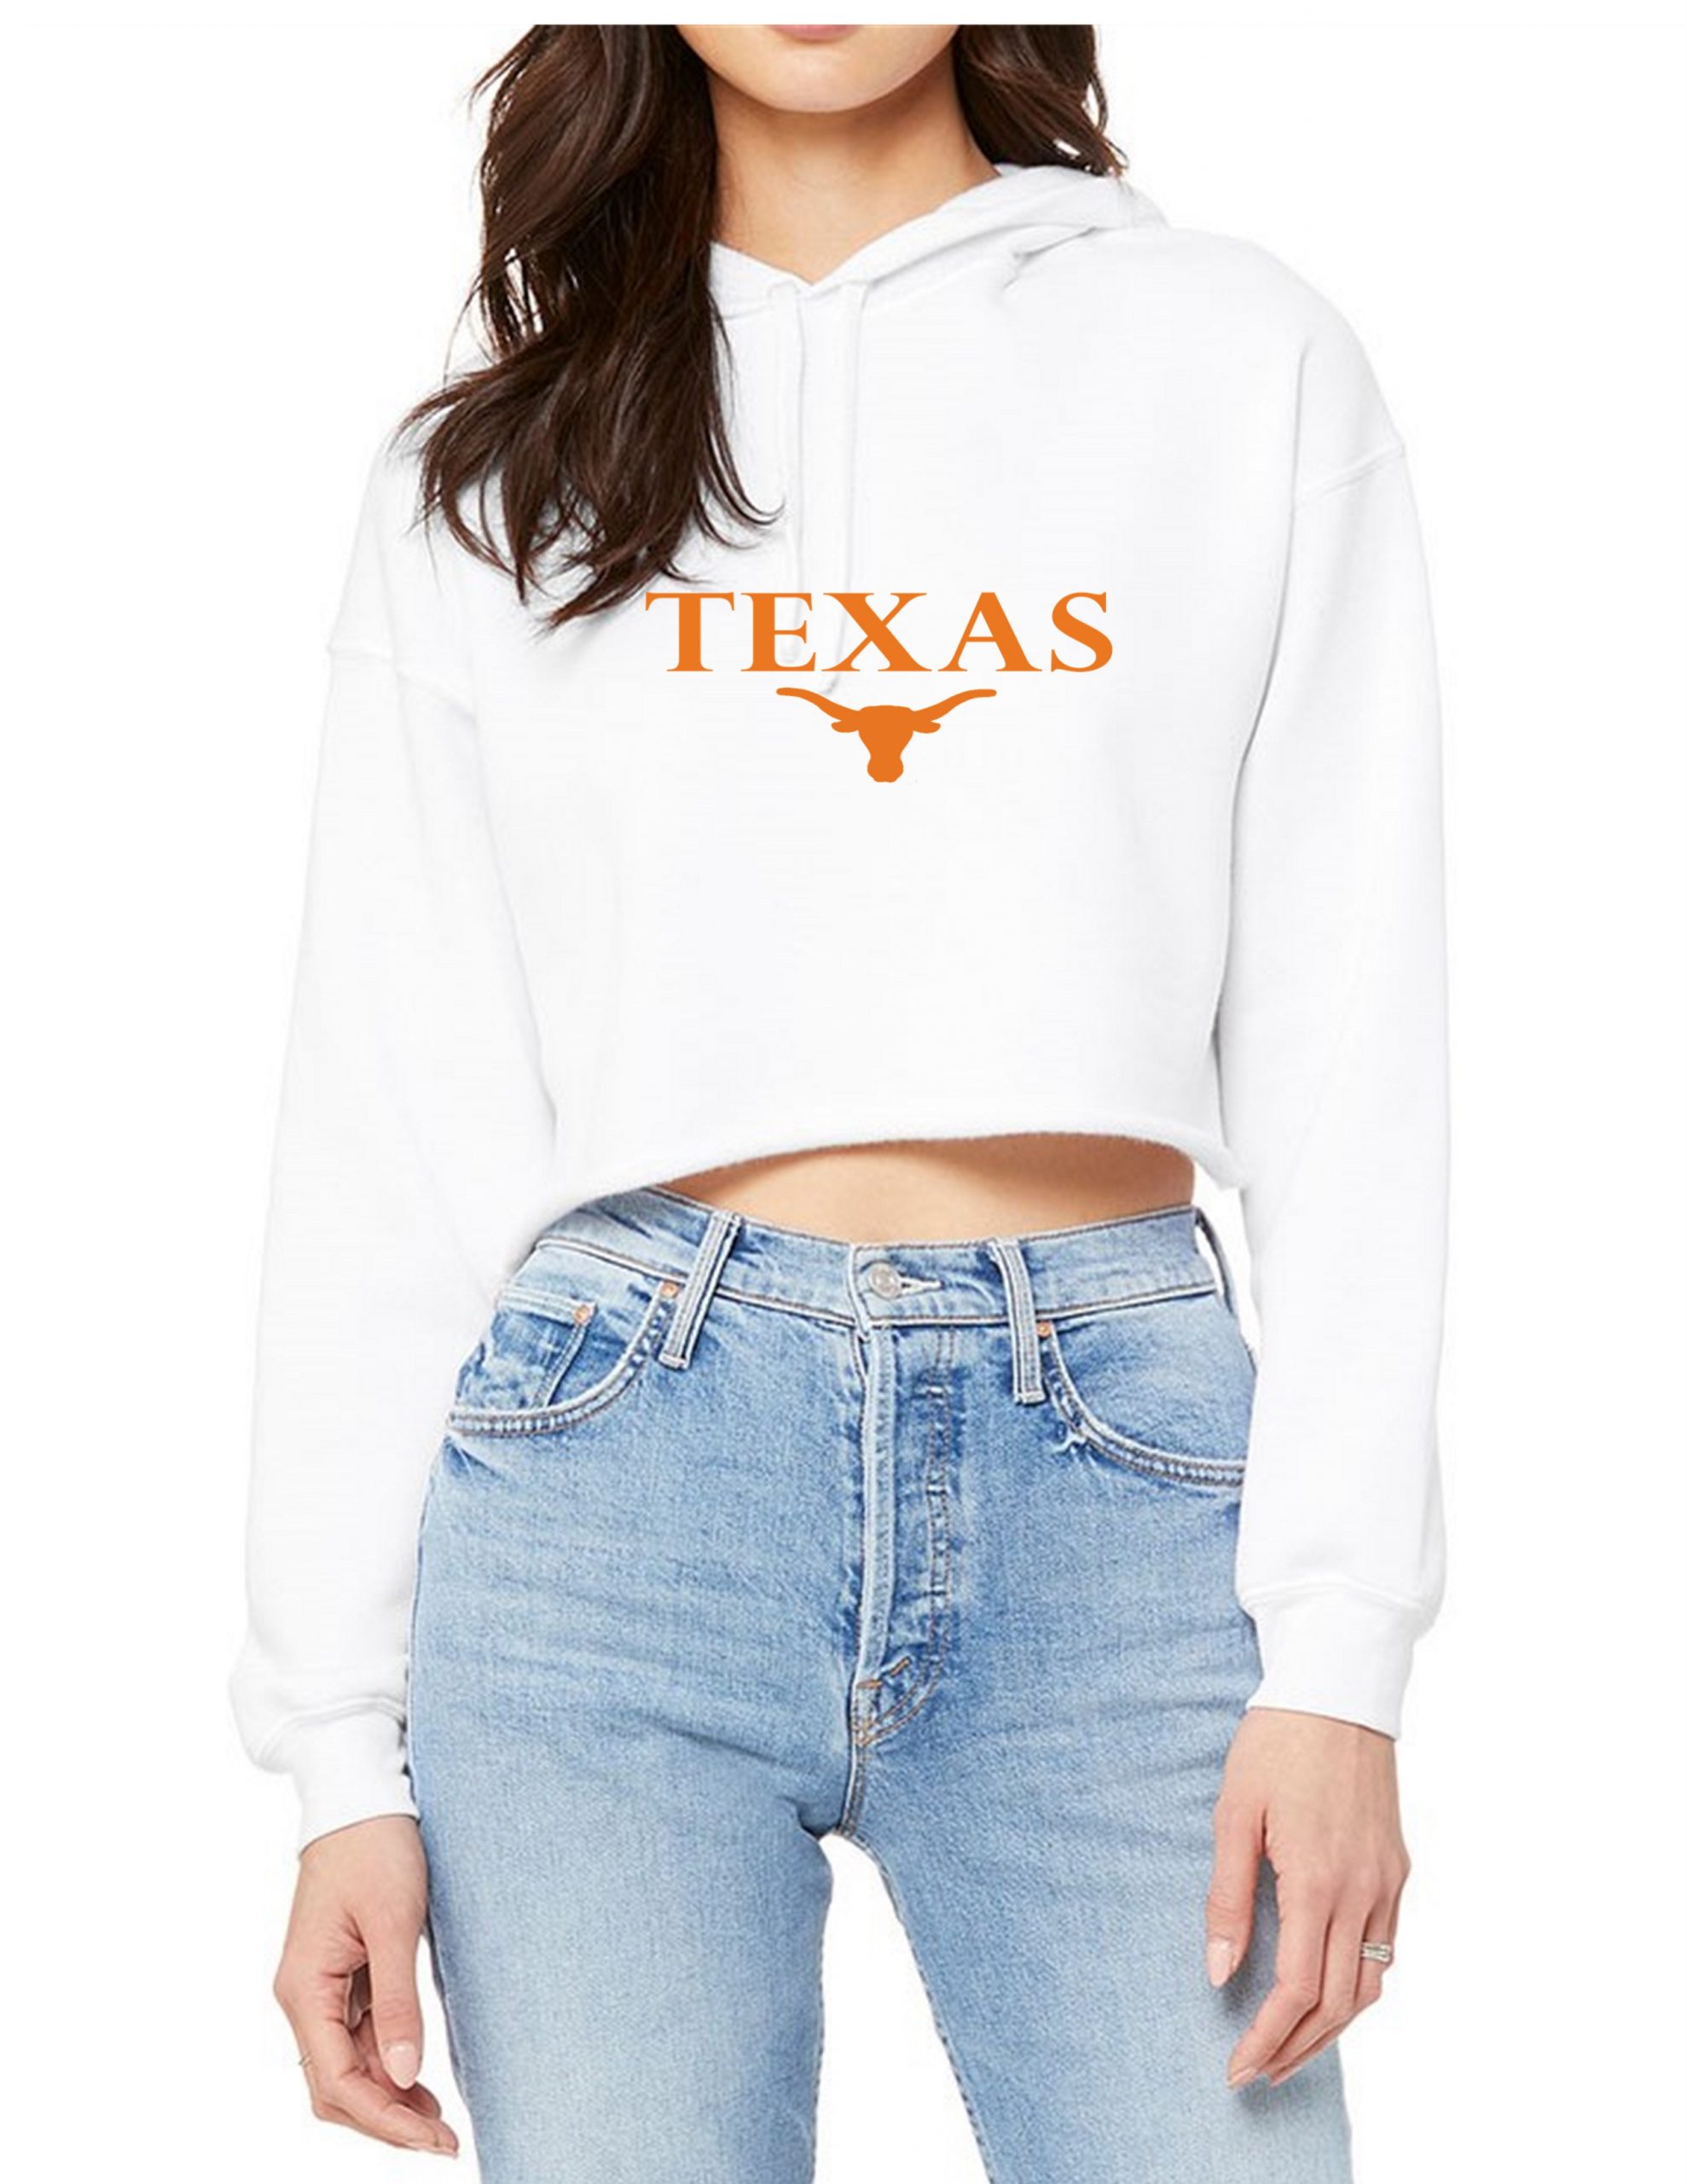 The University Of Texas Hook Em Horns Shirt, hoodie, sweater, long